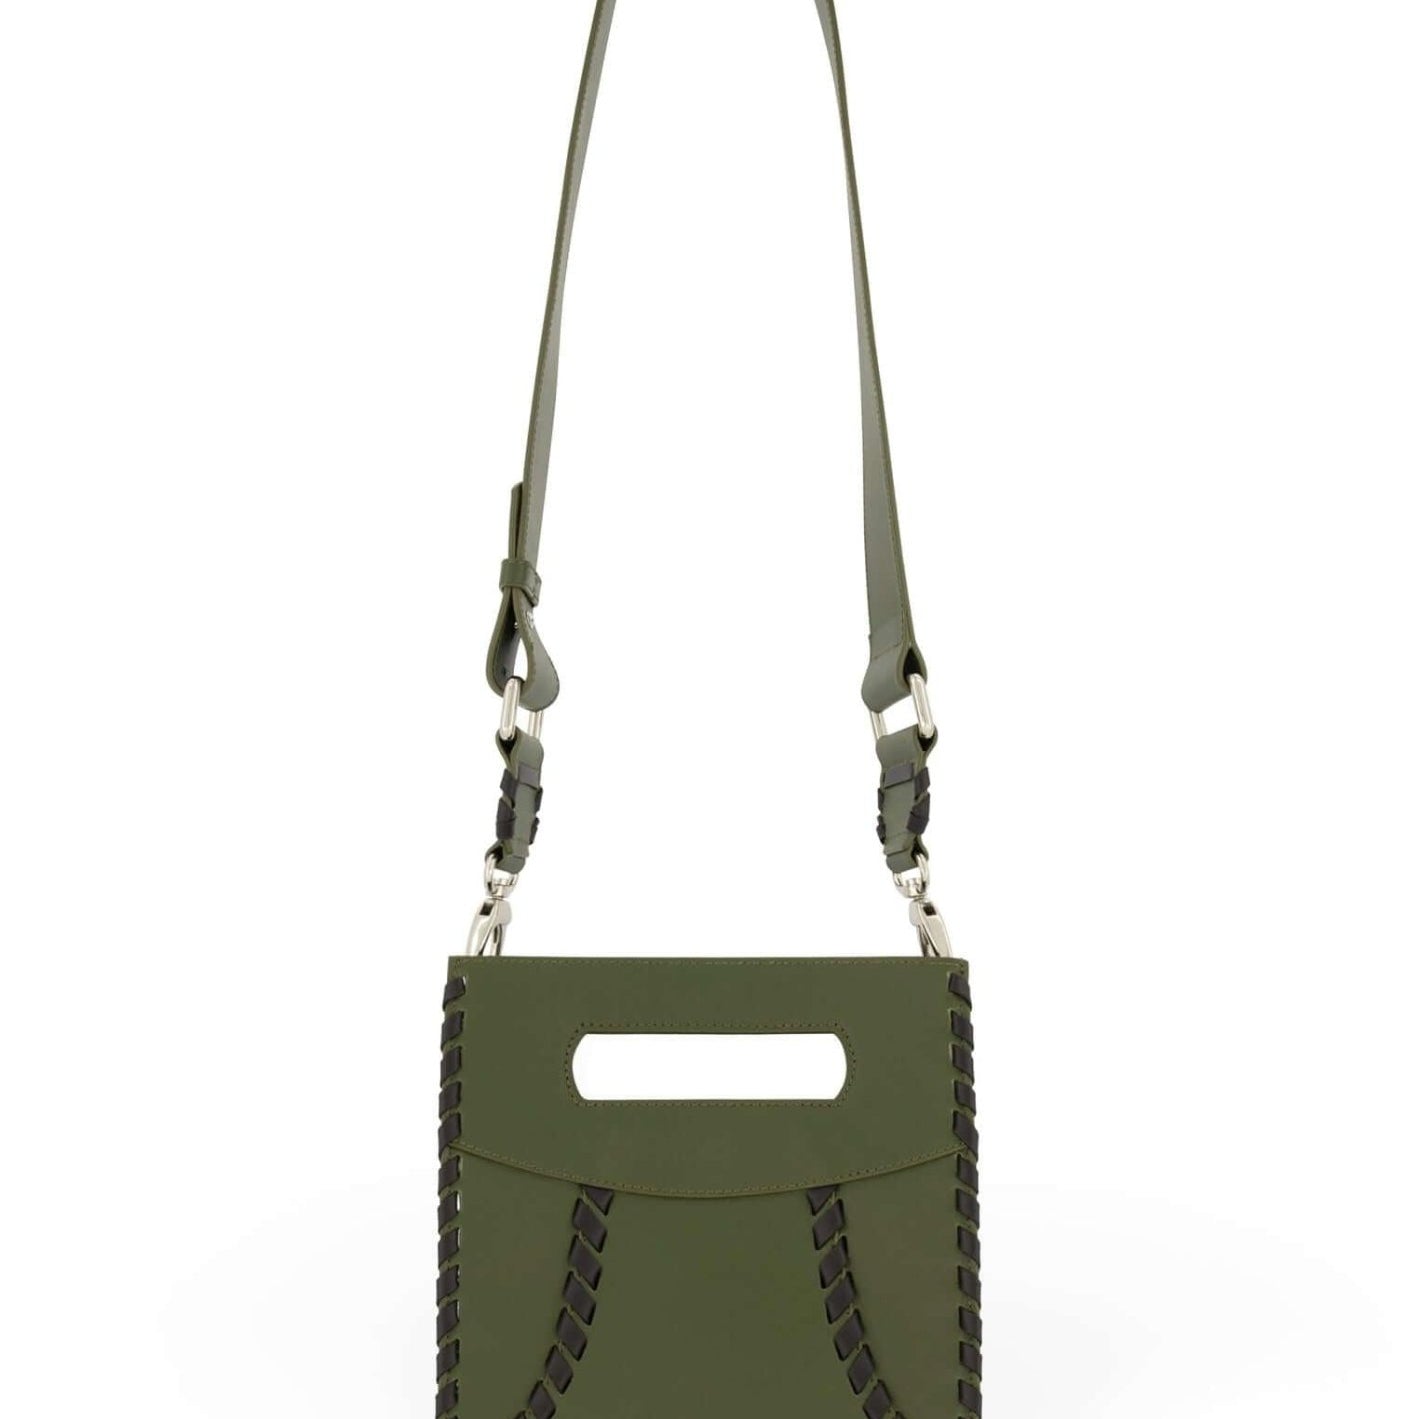 Maxima Limited Edition Olive - MARCUS ELIZABETH - Handbags - Maxima Limited Edition Olive - MARCUS ELIZABETH